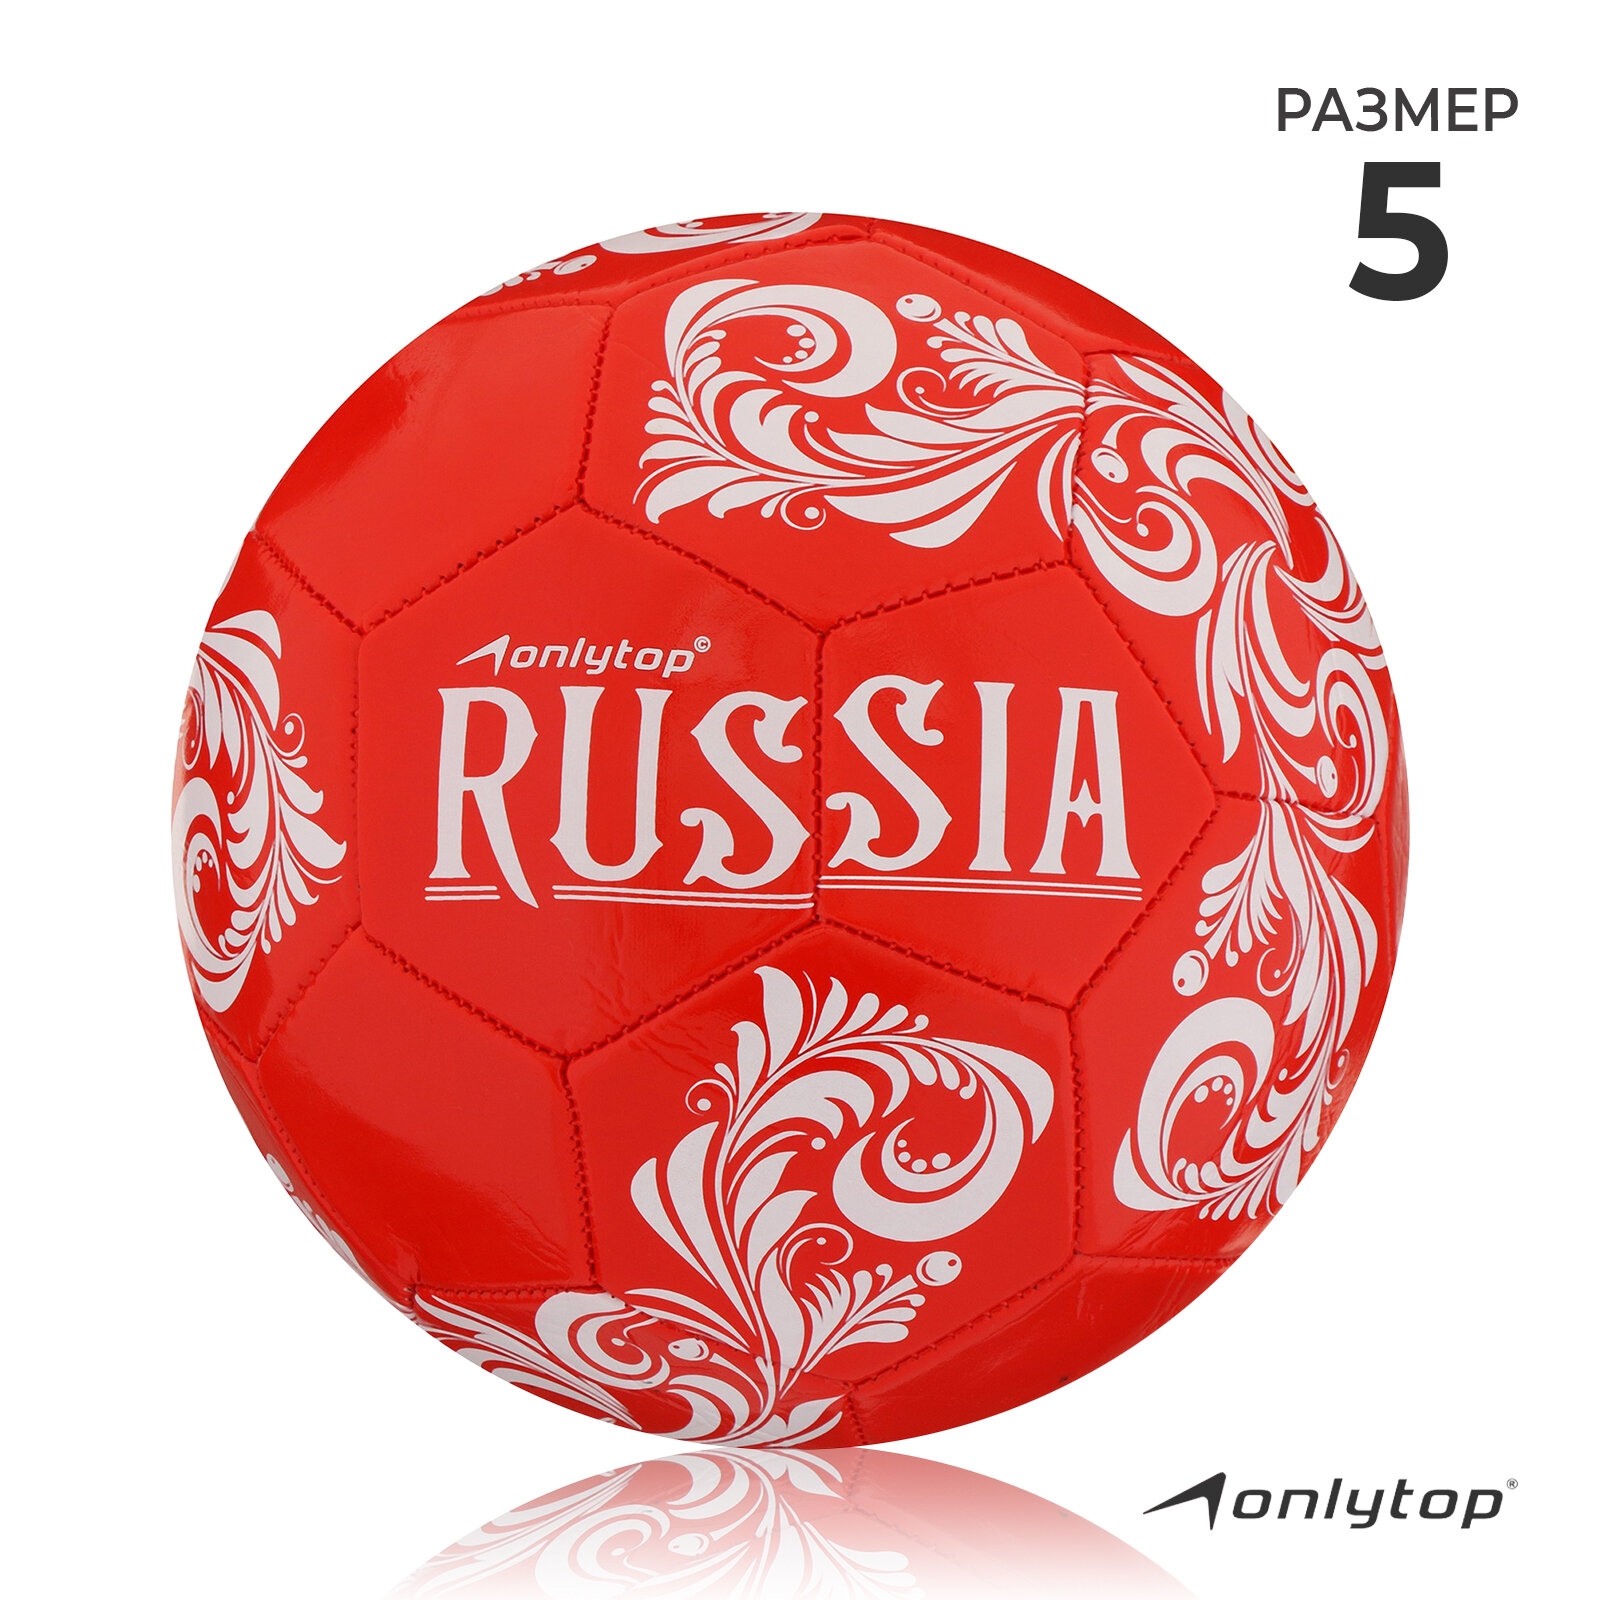 Мяч ONLYTOP "RUSSIA", футбольный, размер 5, 32 панели, PVC, 2 подслоя, машинная сшивка, вес 260 г, цвет красный